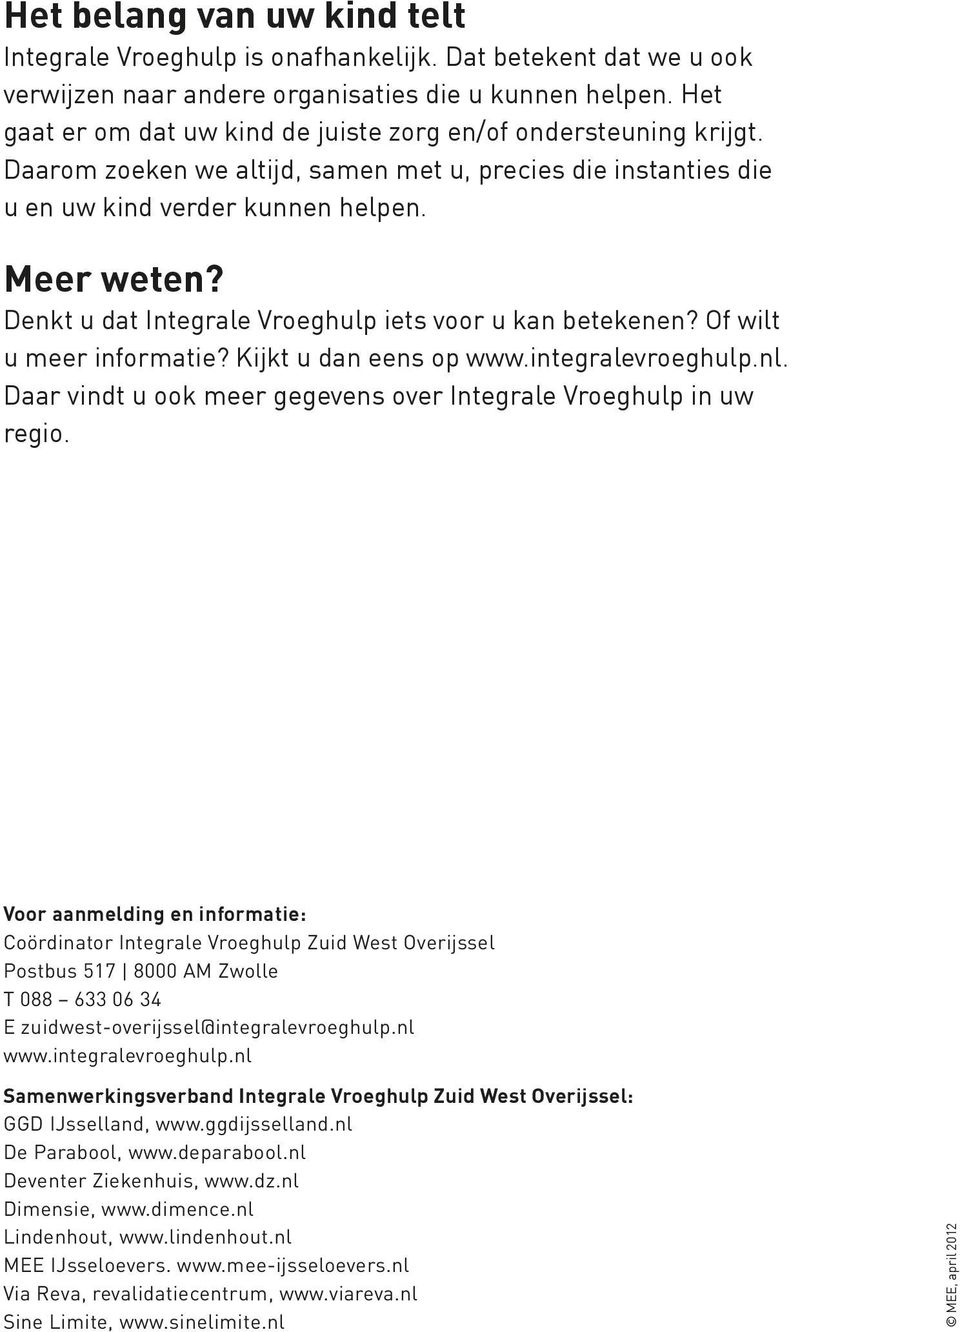 Denkt u dat Integrale Vroeghulp iets voor u kan betekenen? Of wilt u meer informatie? Kijkt u dan eens op www.integralevroeghulp.nl.